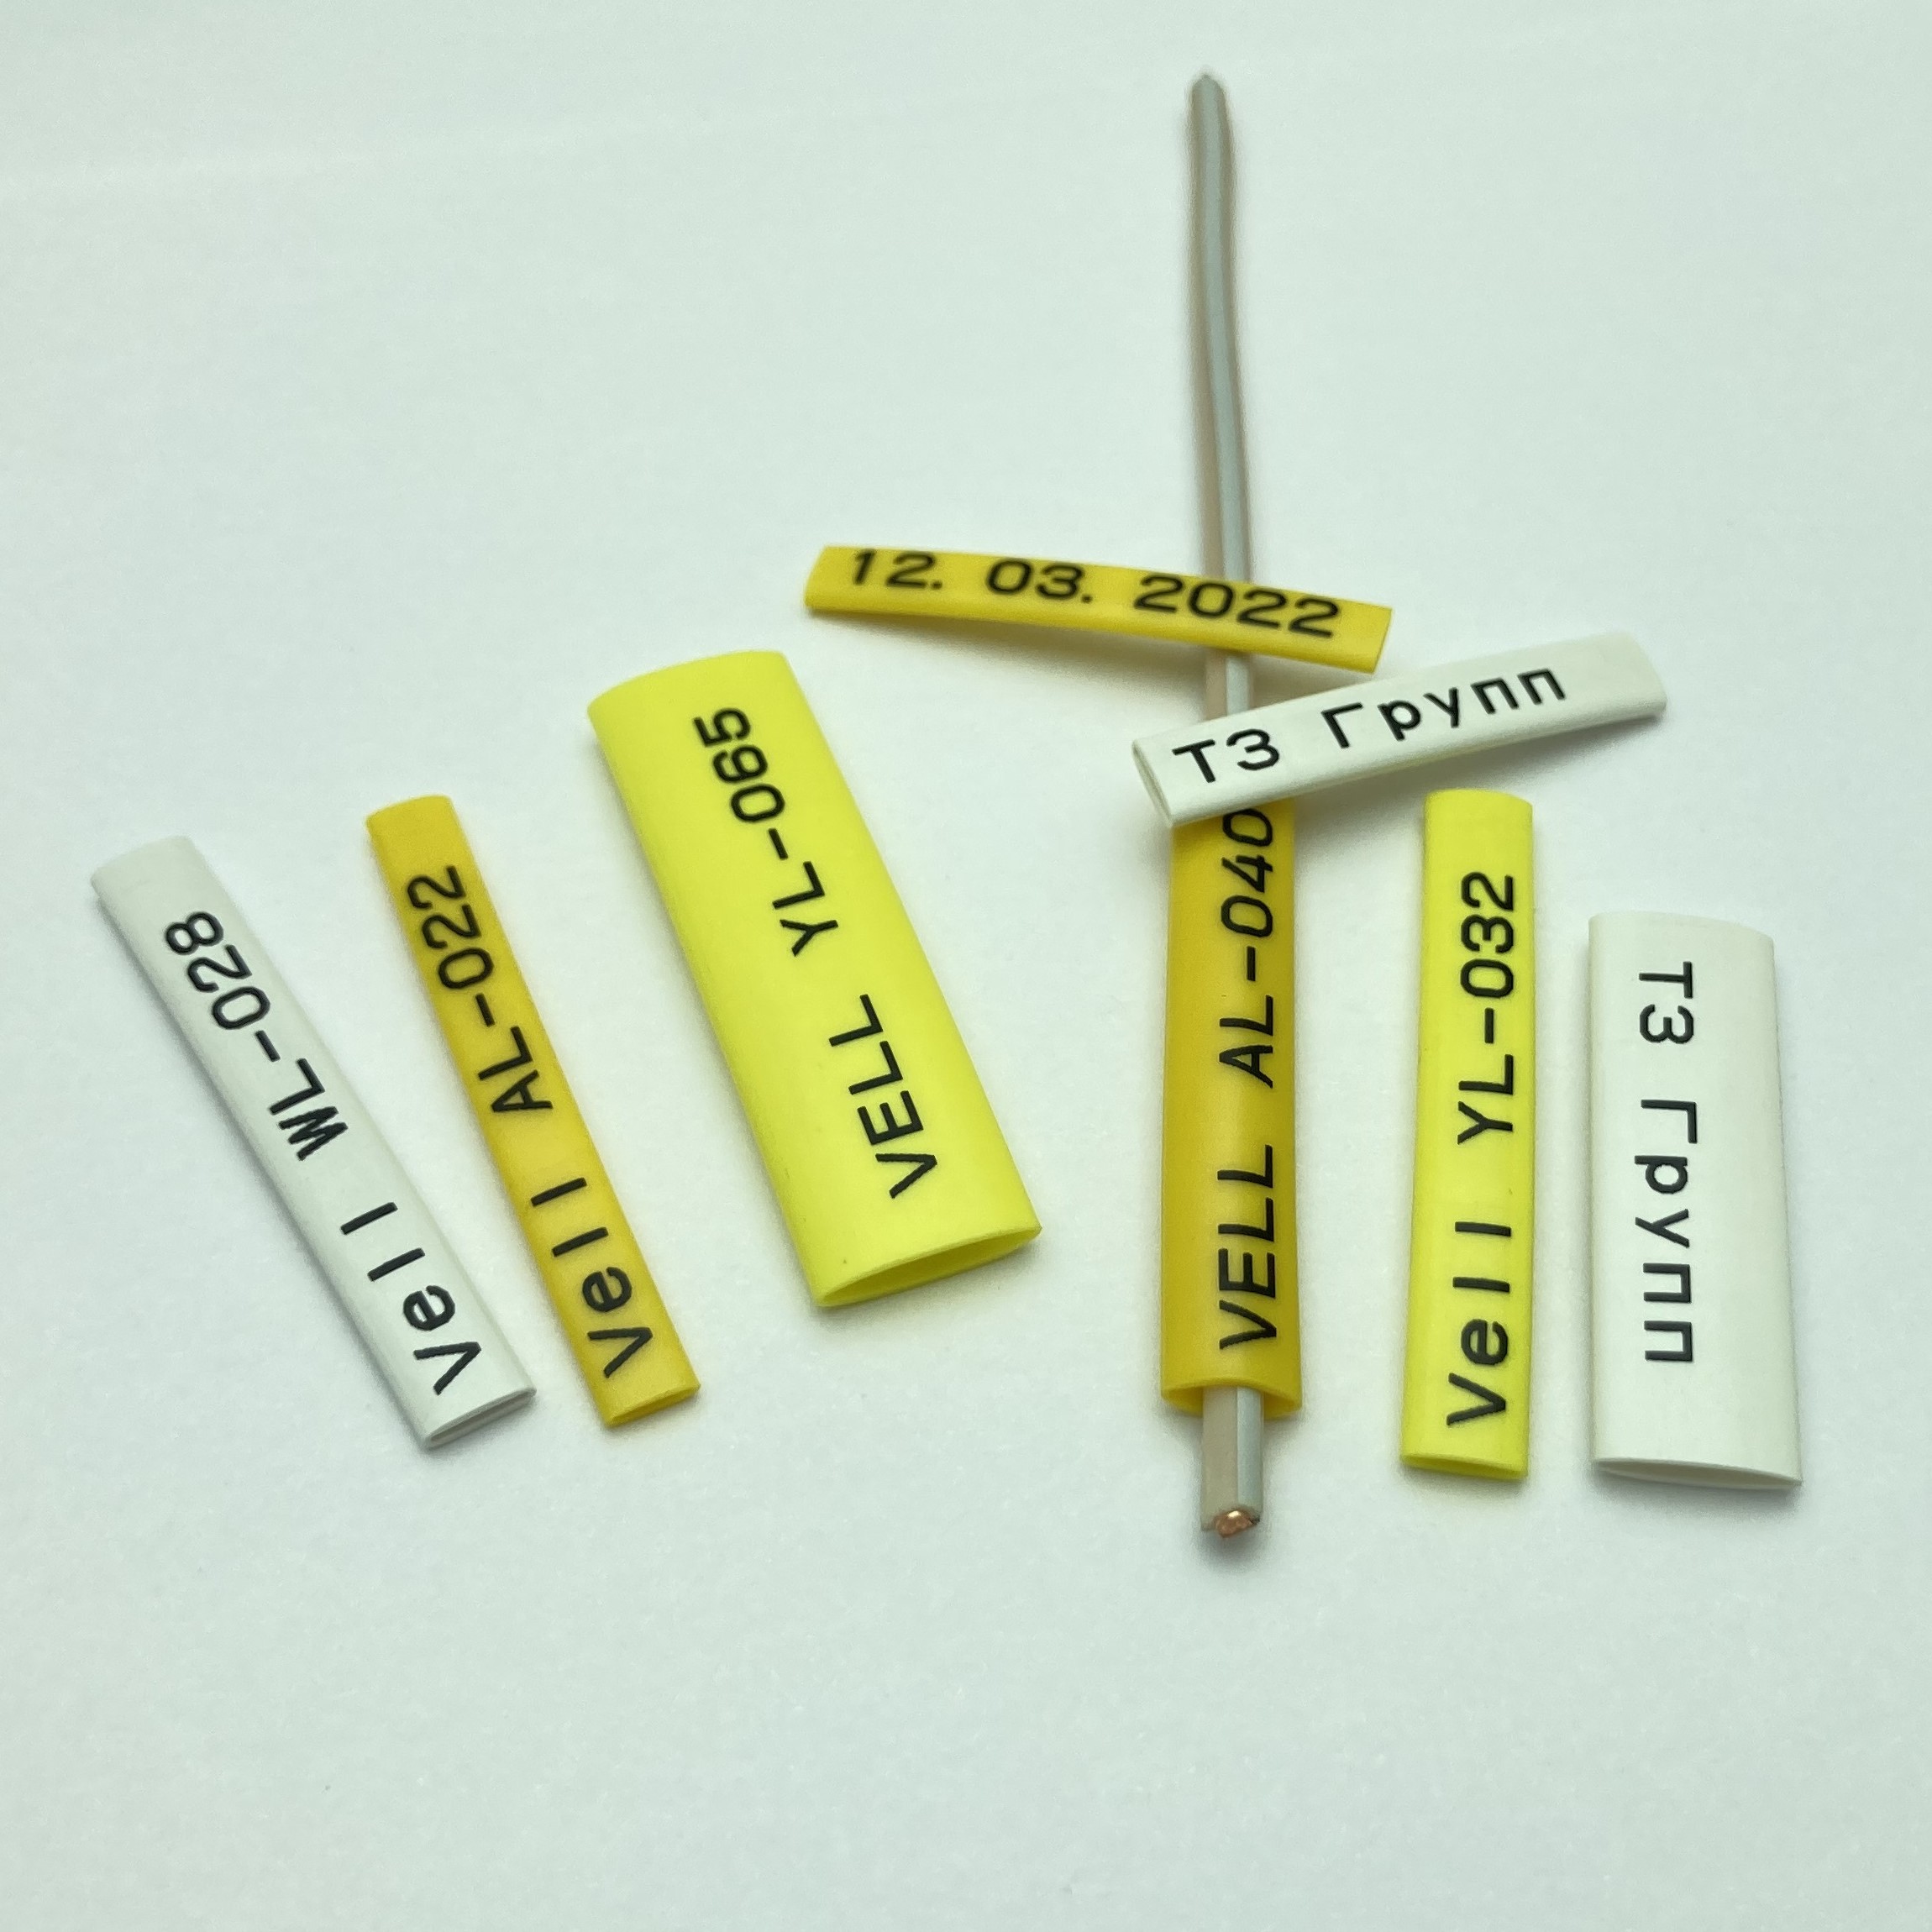 Фото Профиль ПВХ овальный Vell AL-032 для маркировки проводов, Ø 3,2 мм, 200 метров, янтарно-желтый, аналог Partex PO-05 (самозатухающий) {590395} (3)